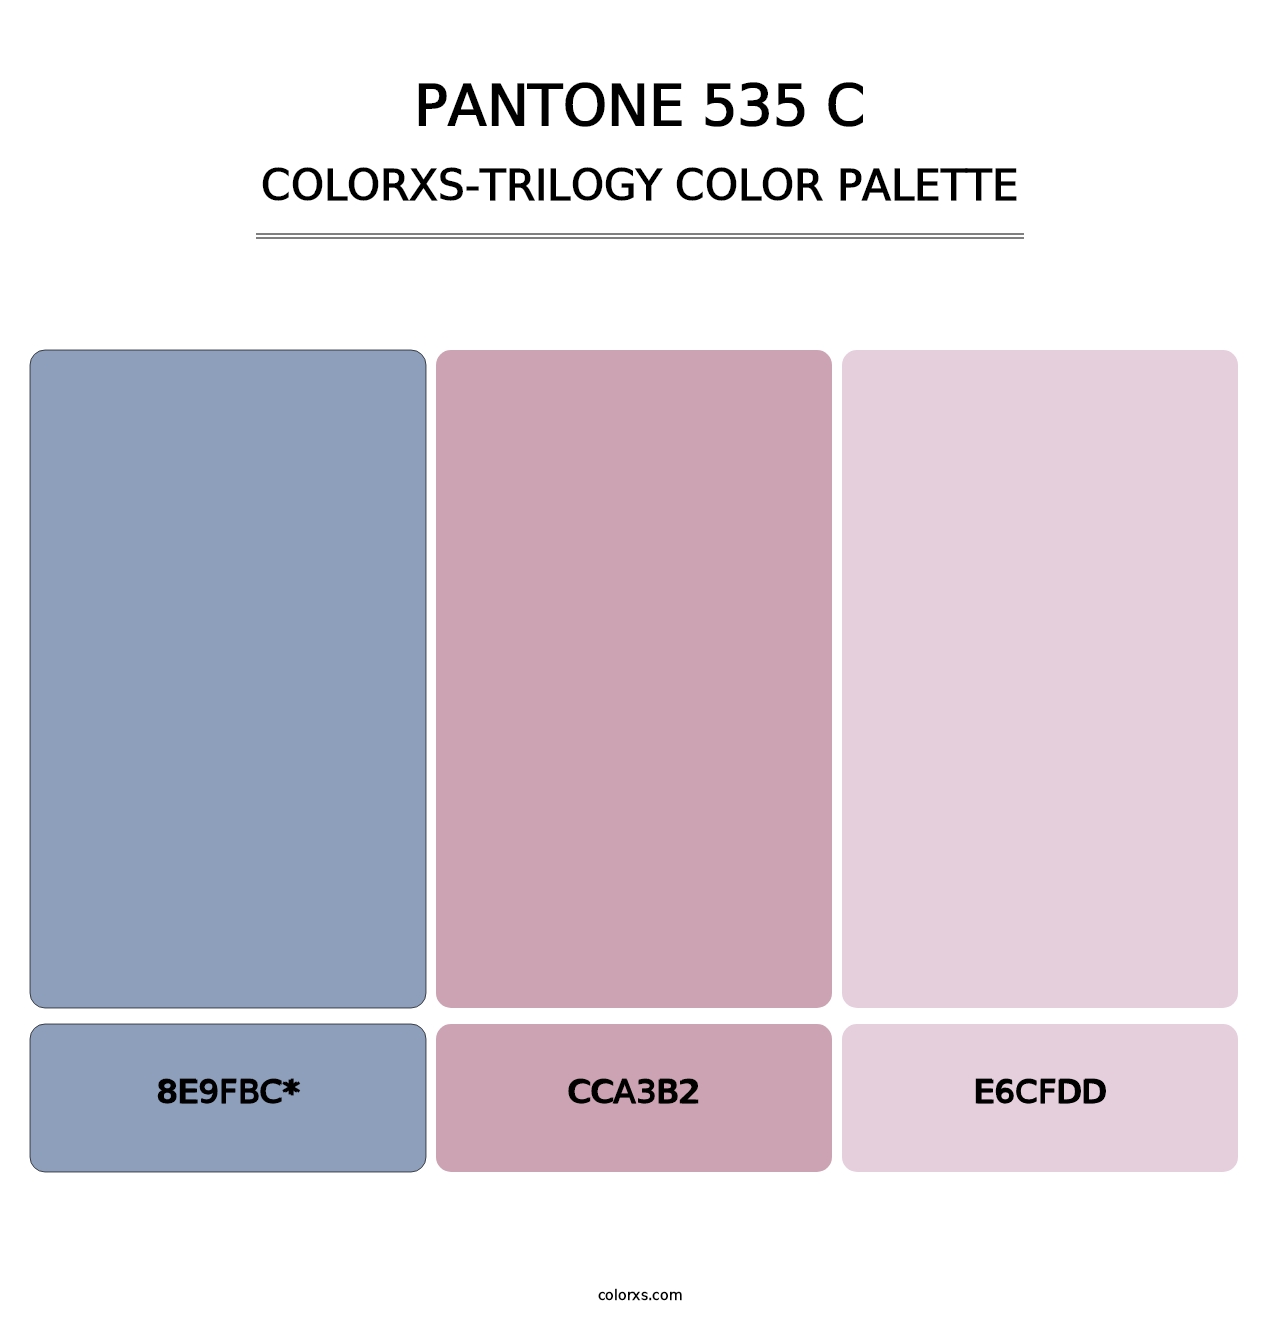 PANTONE 535 C - Colorxs Trilogy Palette